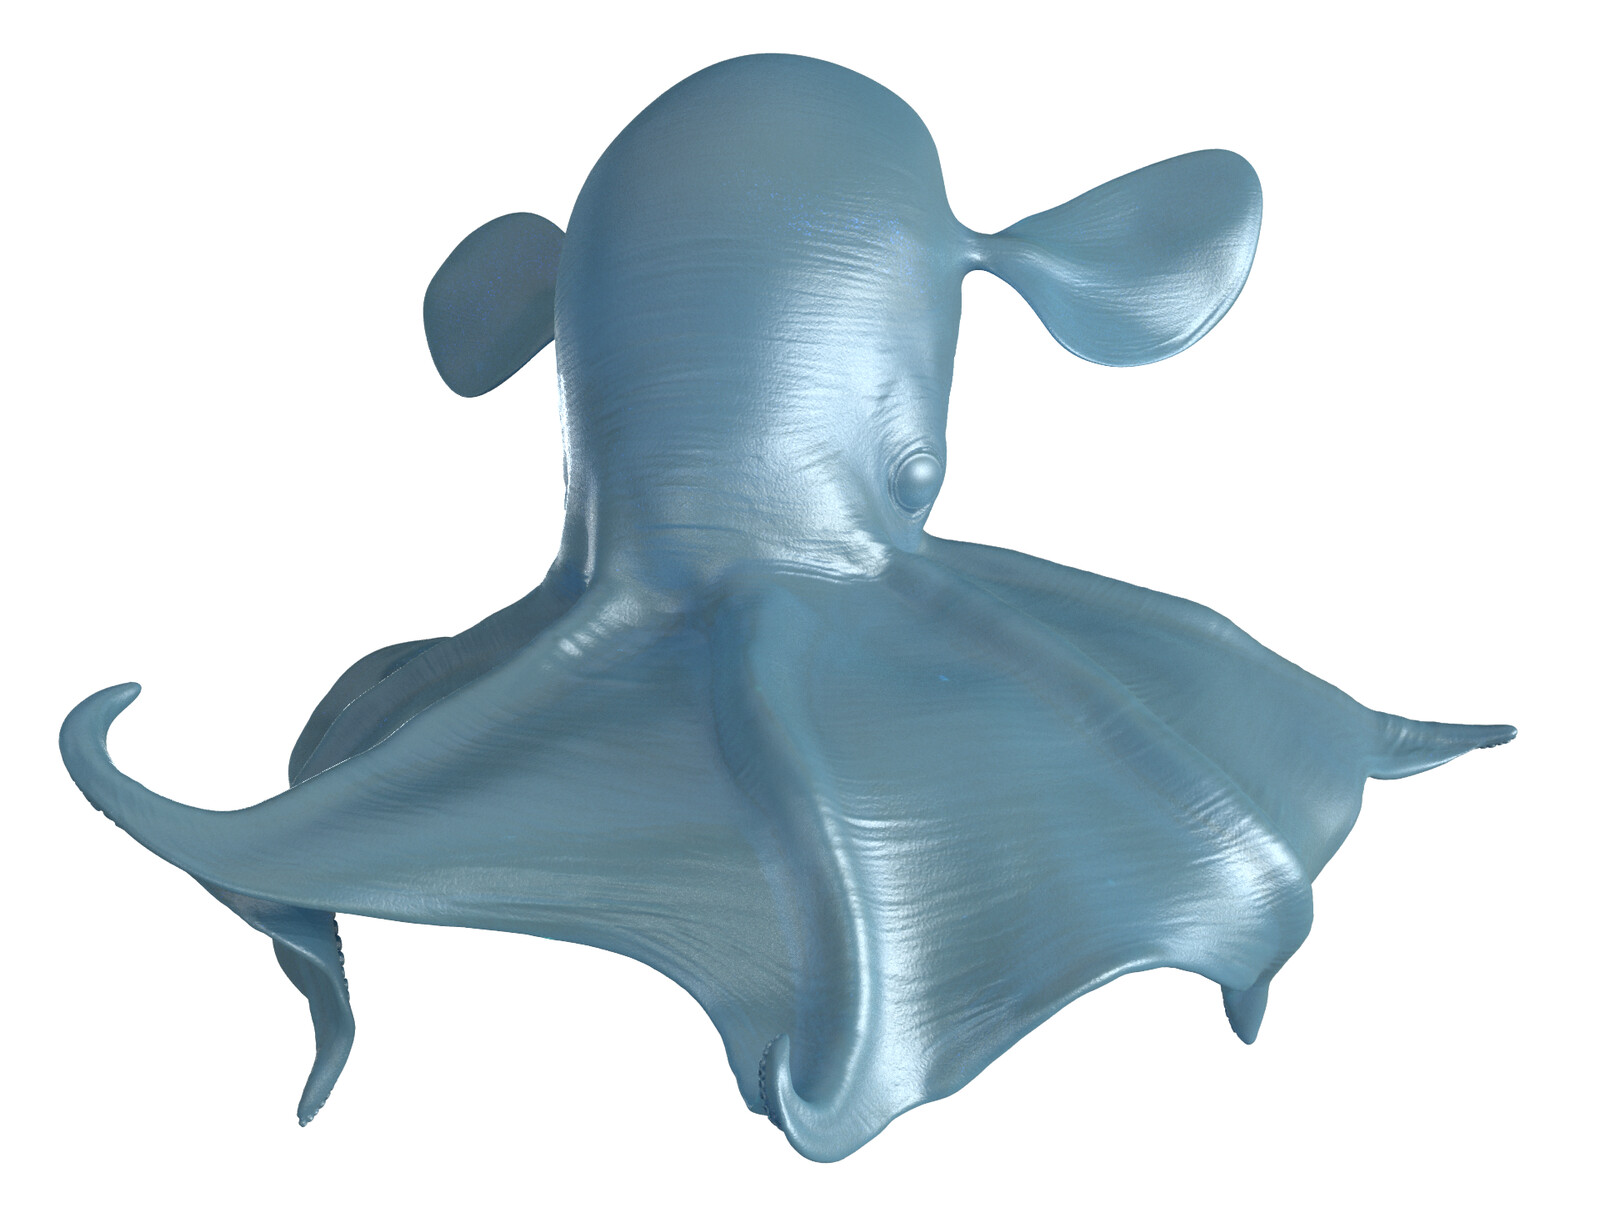 Keyshot Render of Dumbo Octopus model